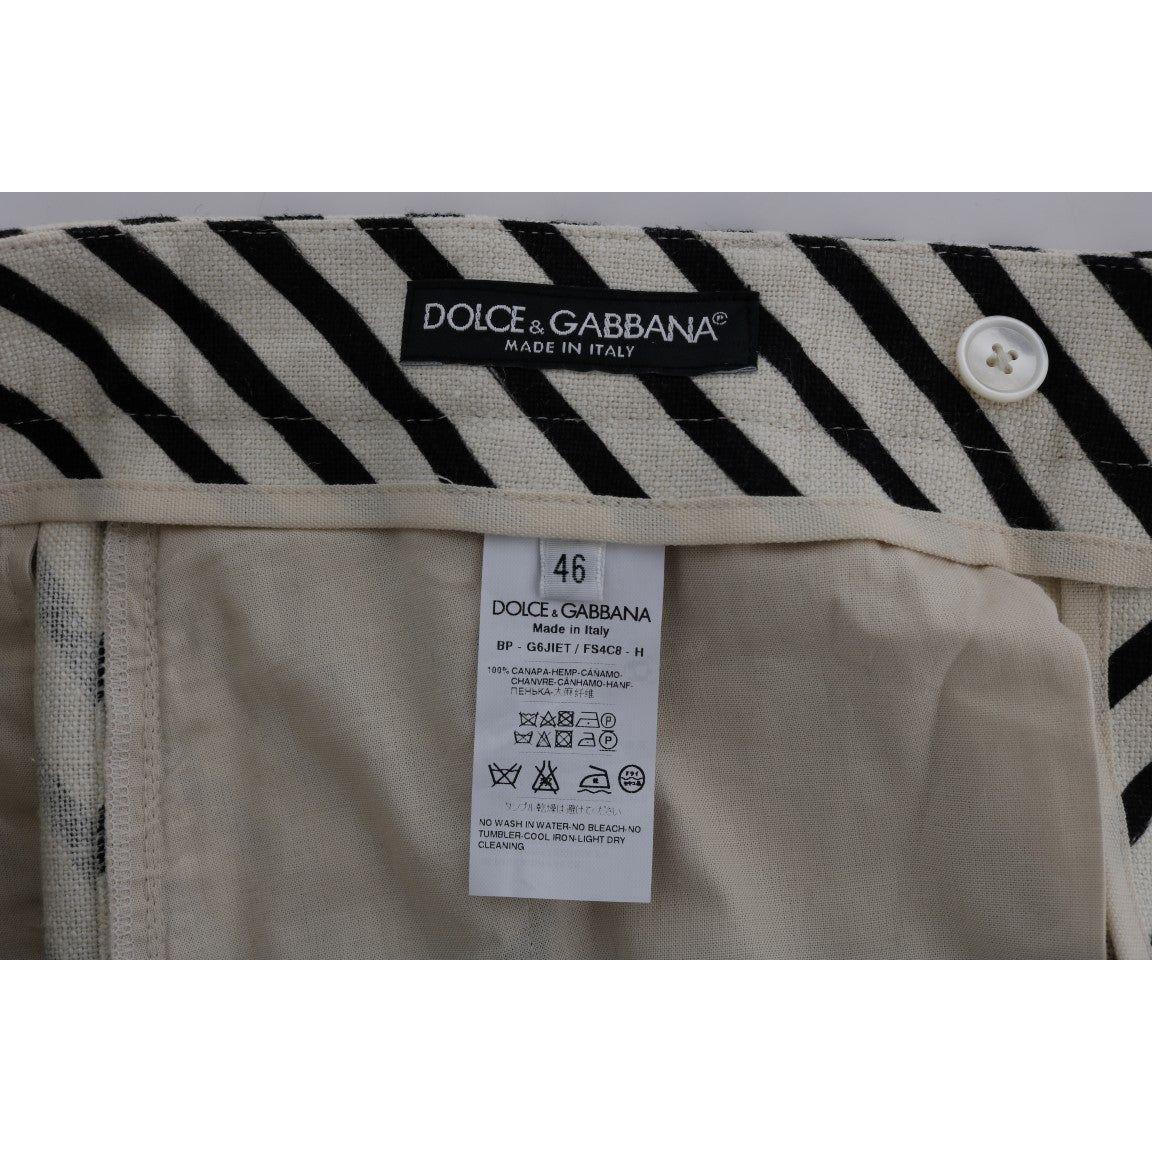 Dolce & Gabbana Striped Hemp Casual Shorts white-black-striped-hemp-casual-shorts 443695-white-black-striped-hemp-casual-shorts-5.jpg